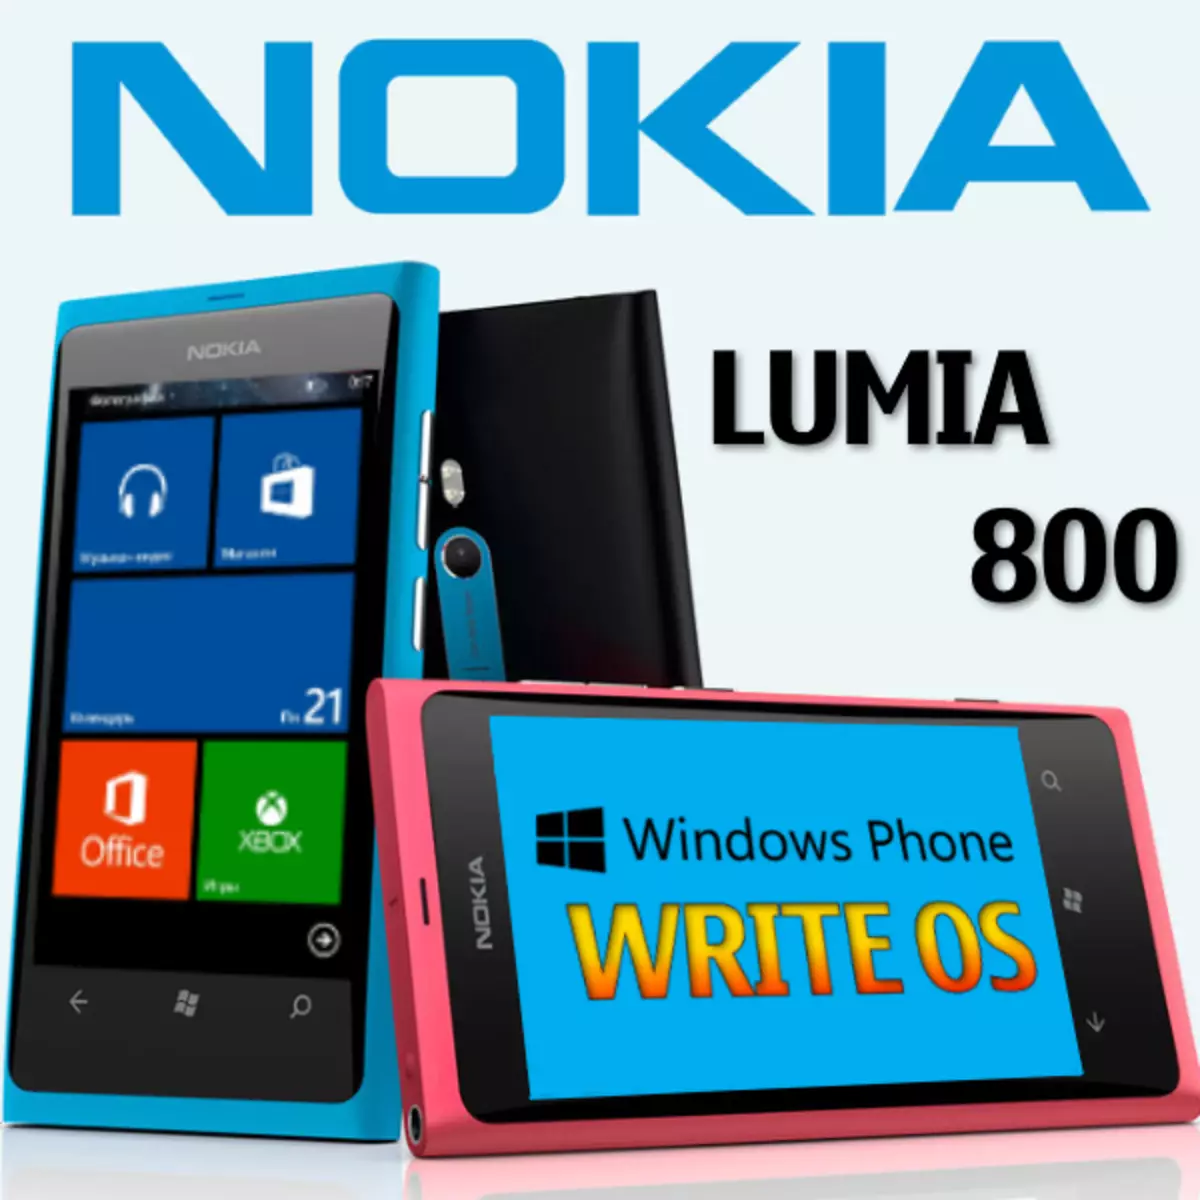 Firmware Lumia 800.